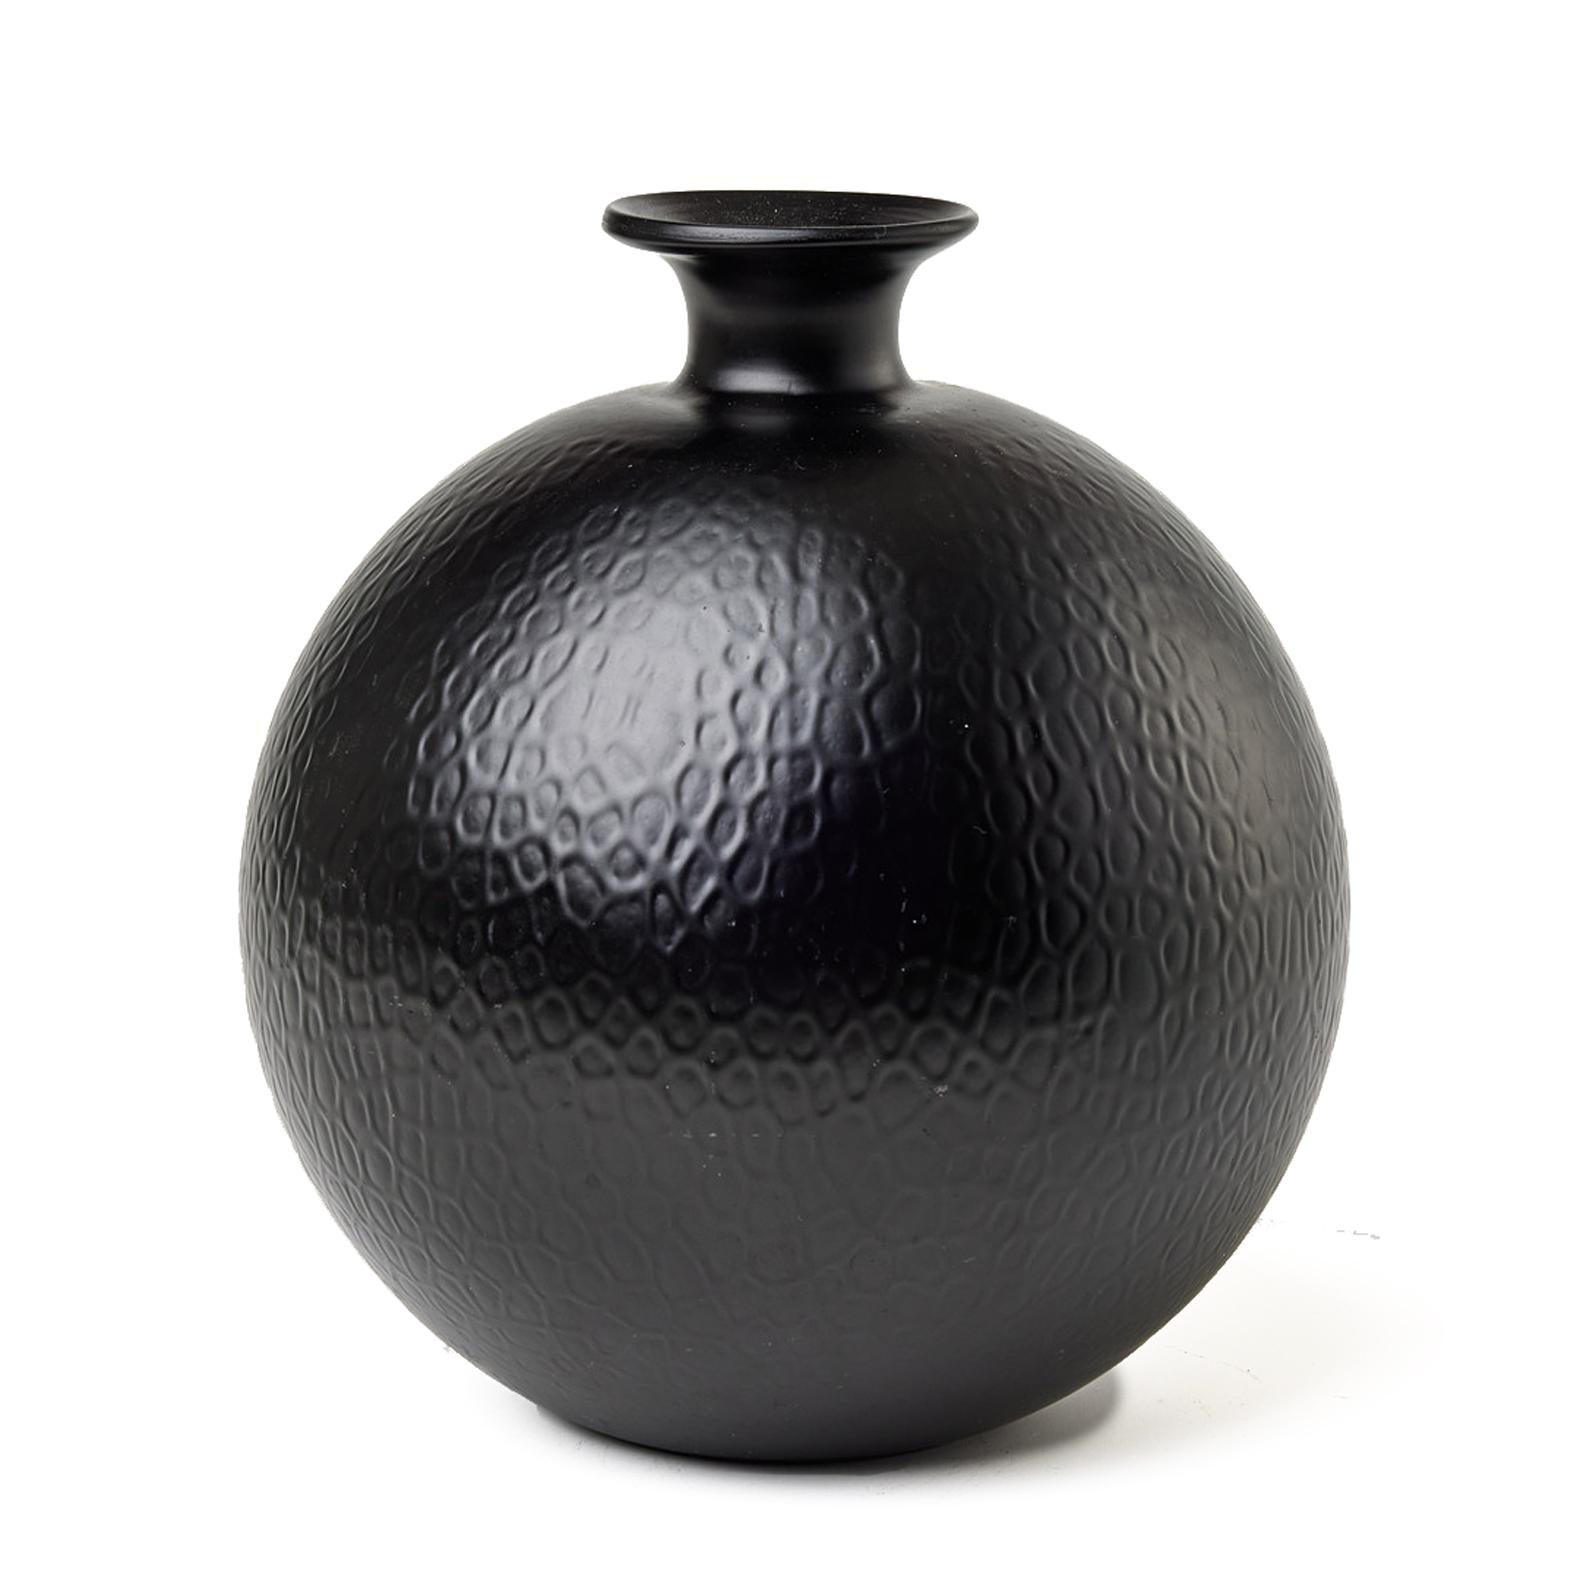 Die schwarze Vase Cryopas Flowerball, 1934 von Harald Elof Notini für Böhlmarks entworfen und von der Glasfabrik Pukeberg hergestellt, ist ein erhabenes funktionalistisches Stück aus opakem Glas. Die 